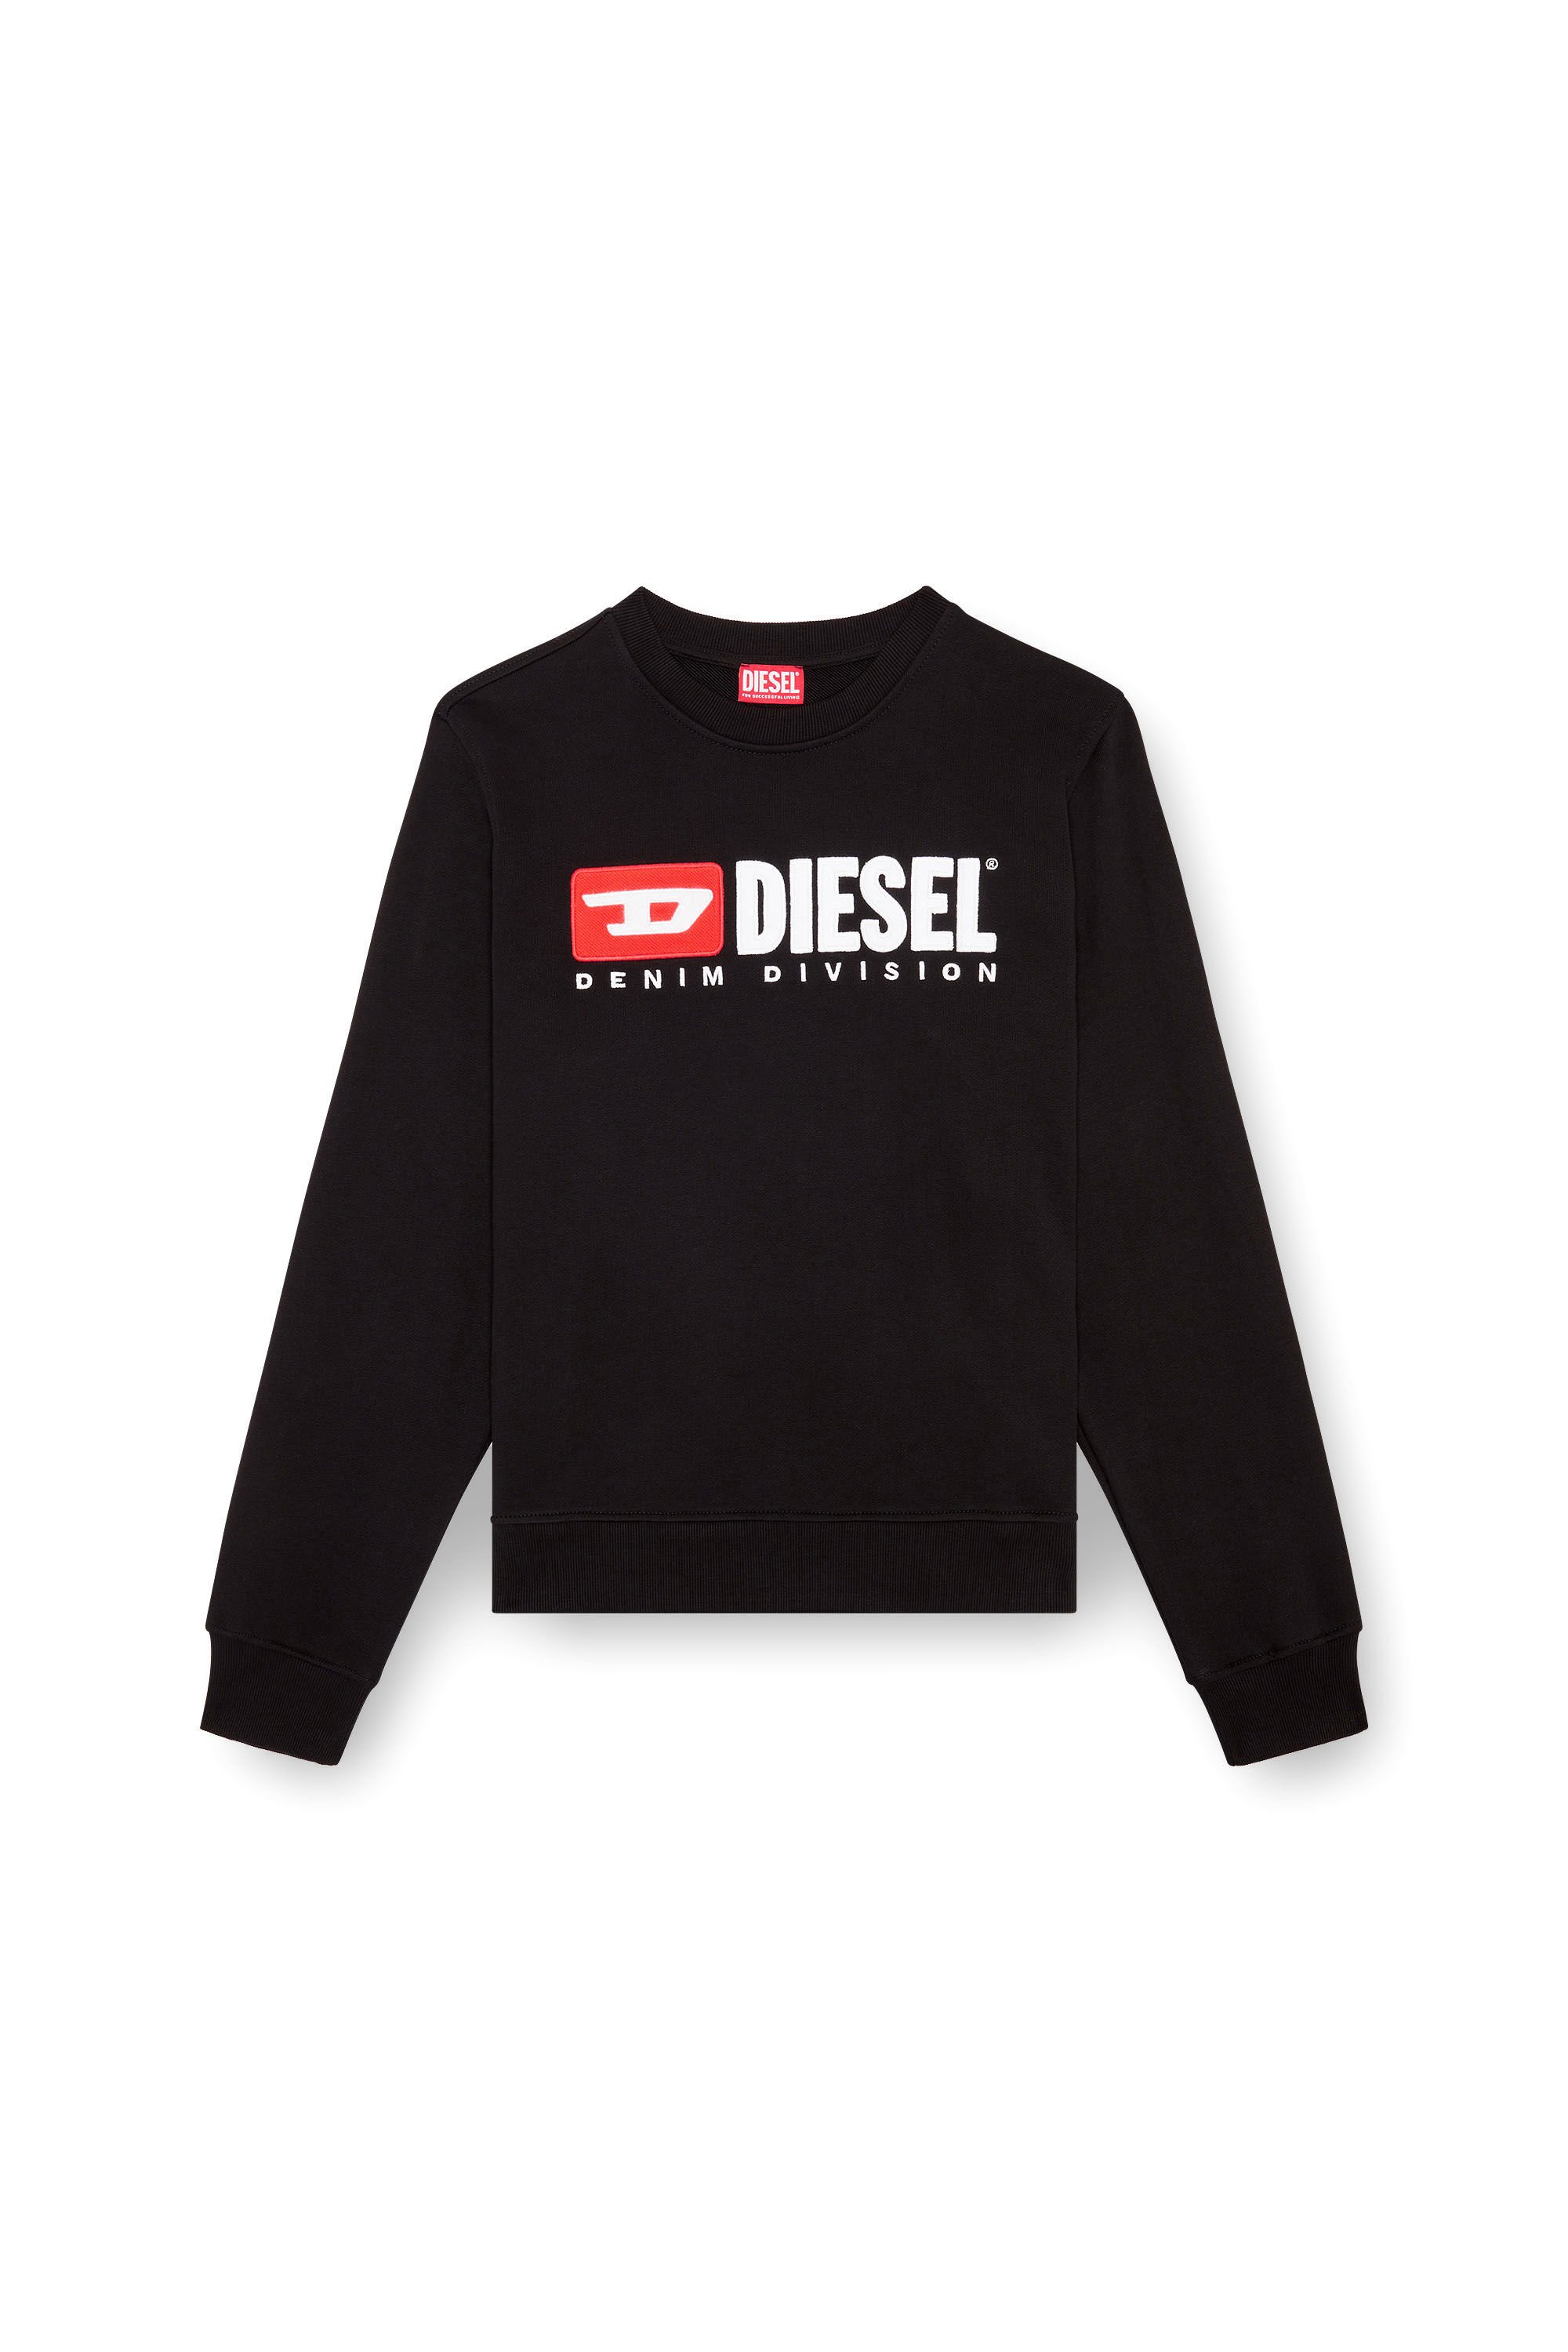 Diesel - S-BOXT-DIV, Herren Sweatshirt mit Denim Division-Logo in Schwarz - Image 2